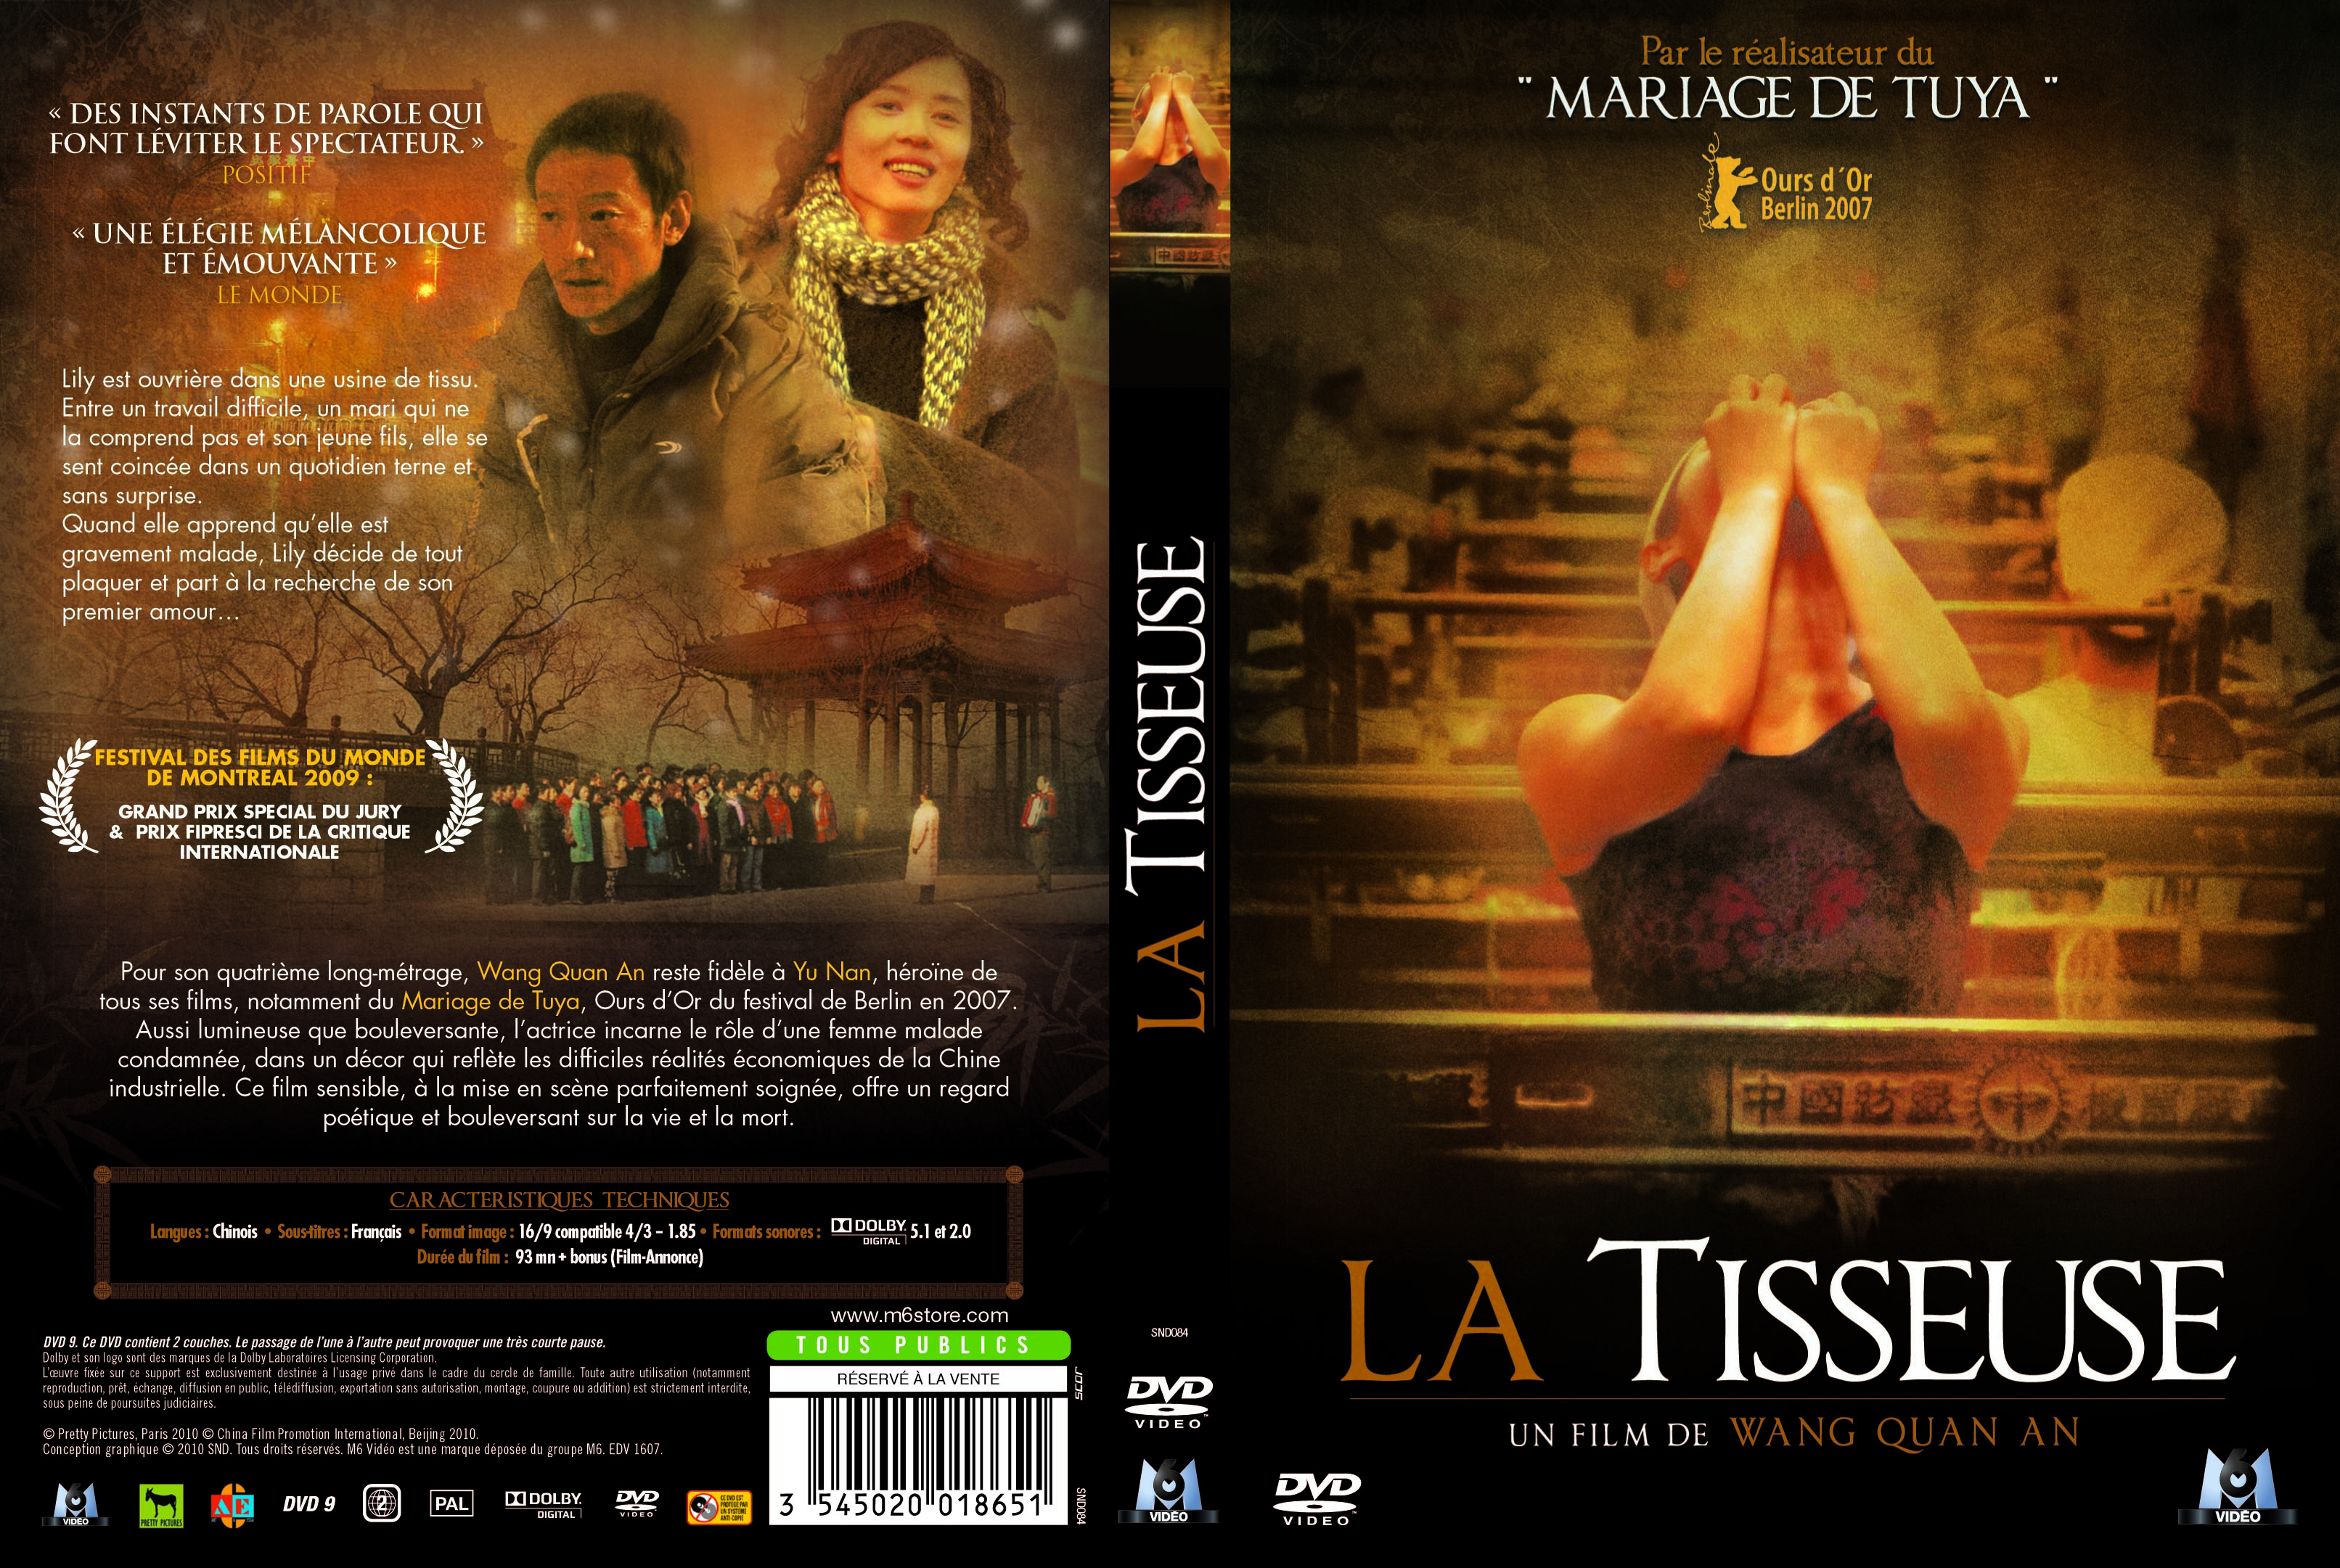 Jaquette DVD La tisseuse